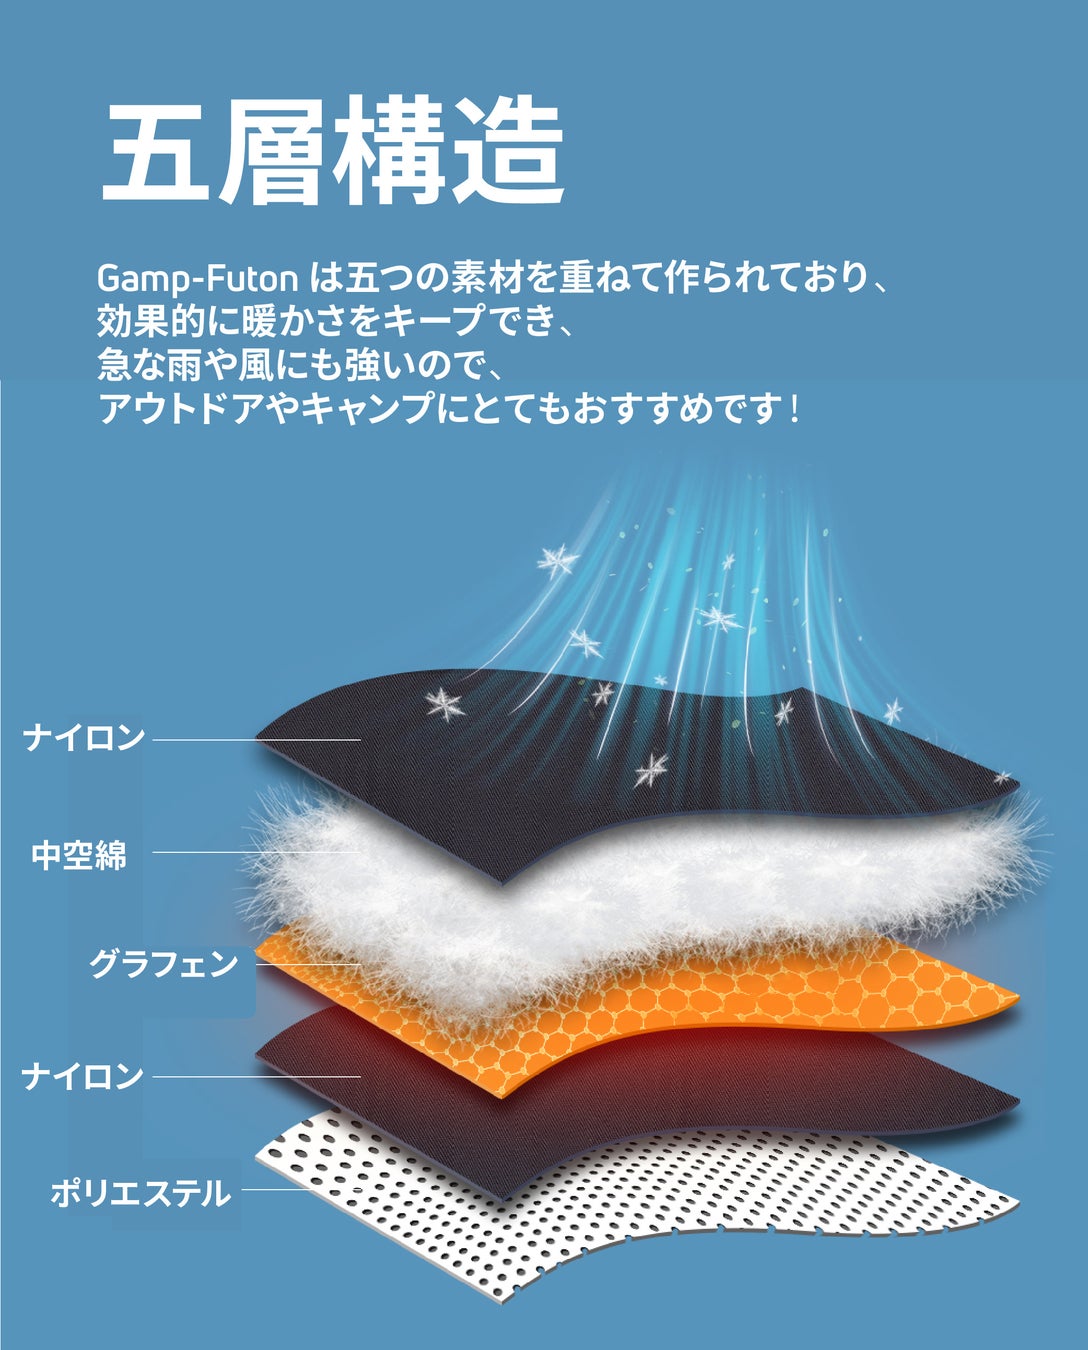 【日本初上陸記念！10セット限定53%オフ】ワンタッチで3秒加熱！最新のテクノロジーを採用！アウトドアで大活躍な電熱寝袋「Gamp-Futon」クラウドファンディング開始のサブ画像6